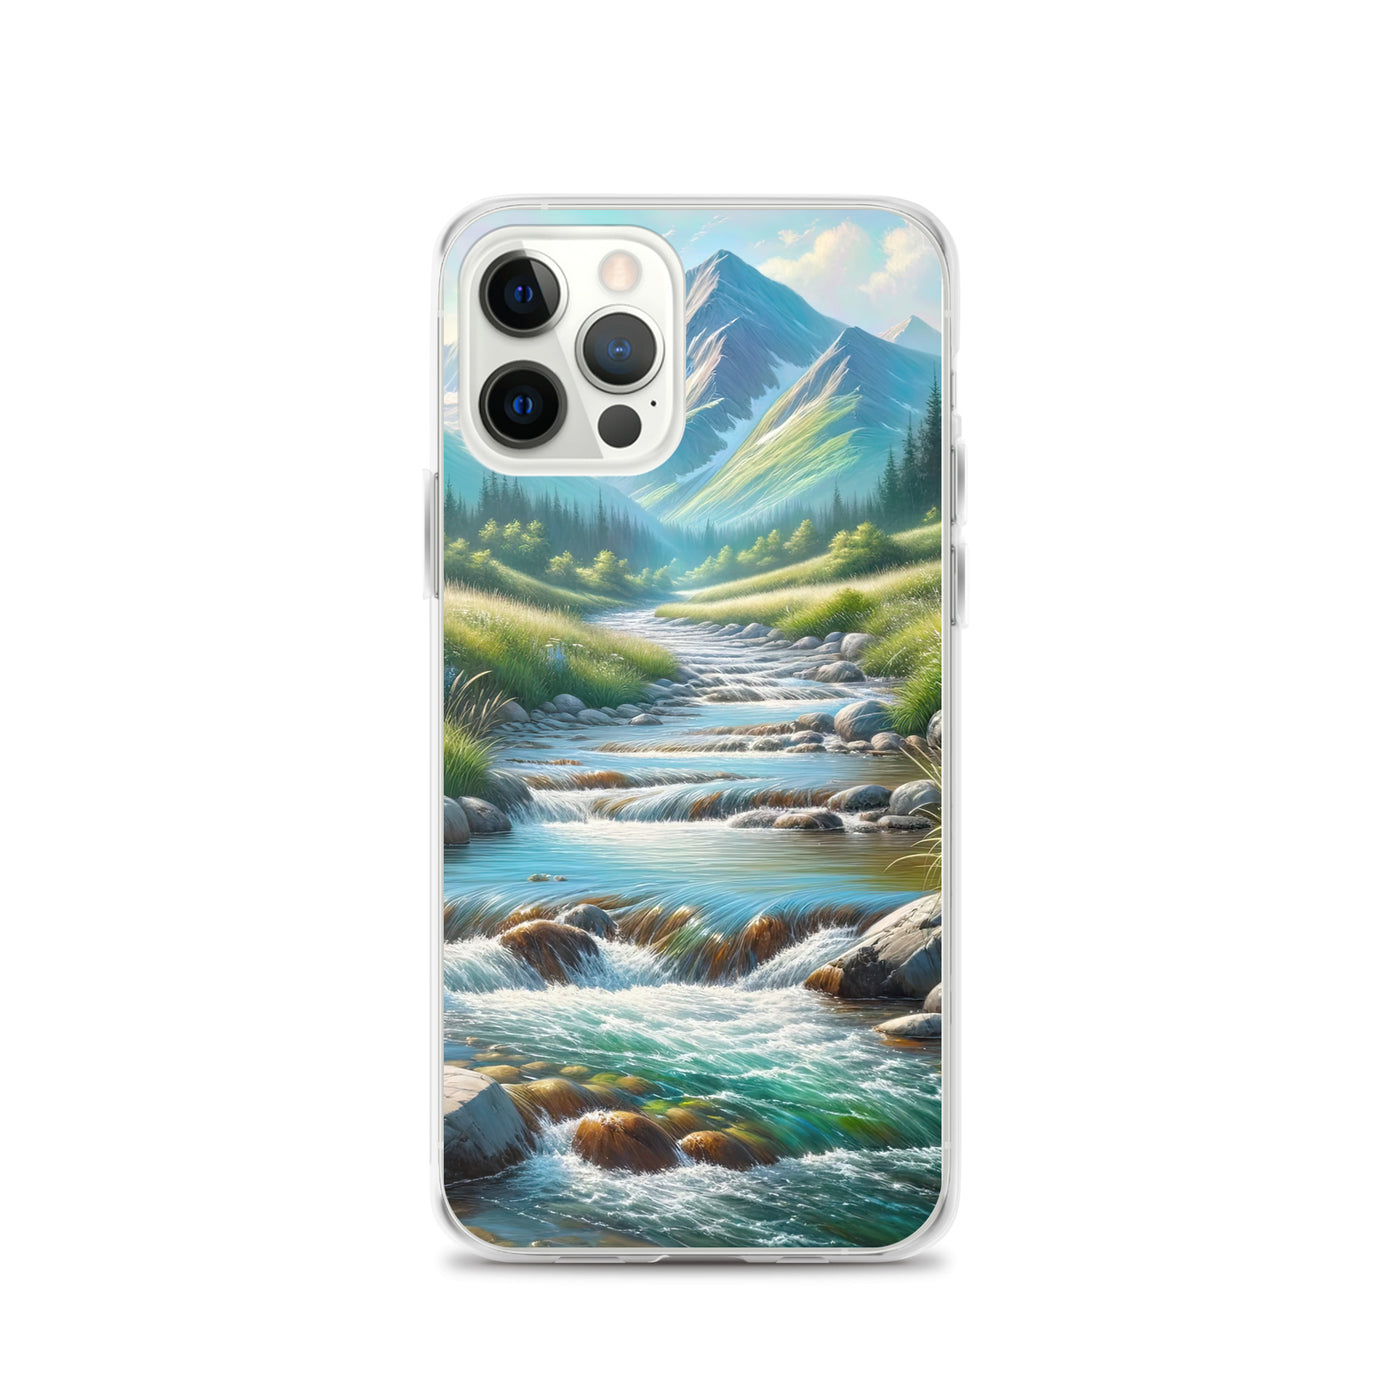 Sanfter Gebirgsbach in Ölgemälde, klares Wasser über glatten Felsen - iPhone Schutzhülle (durchsichtig) berge xxx yyy zzz iPhone 12 Pro